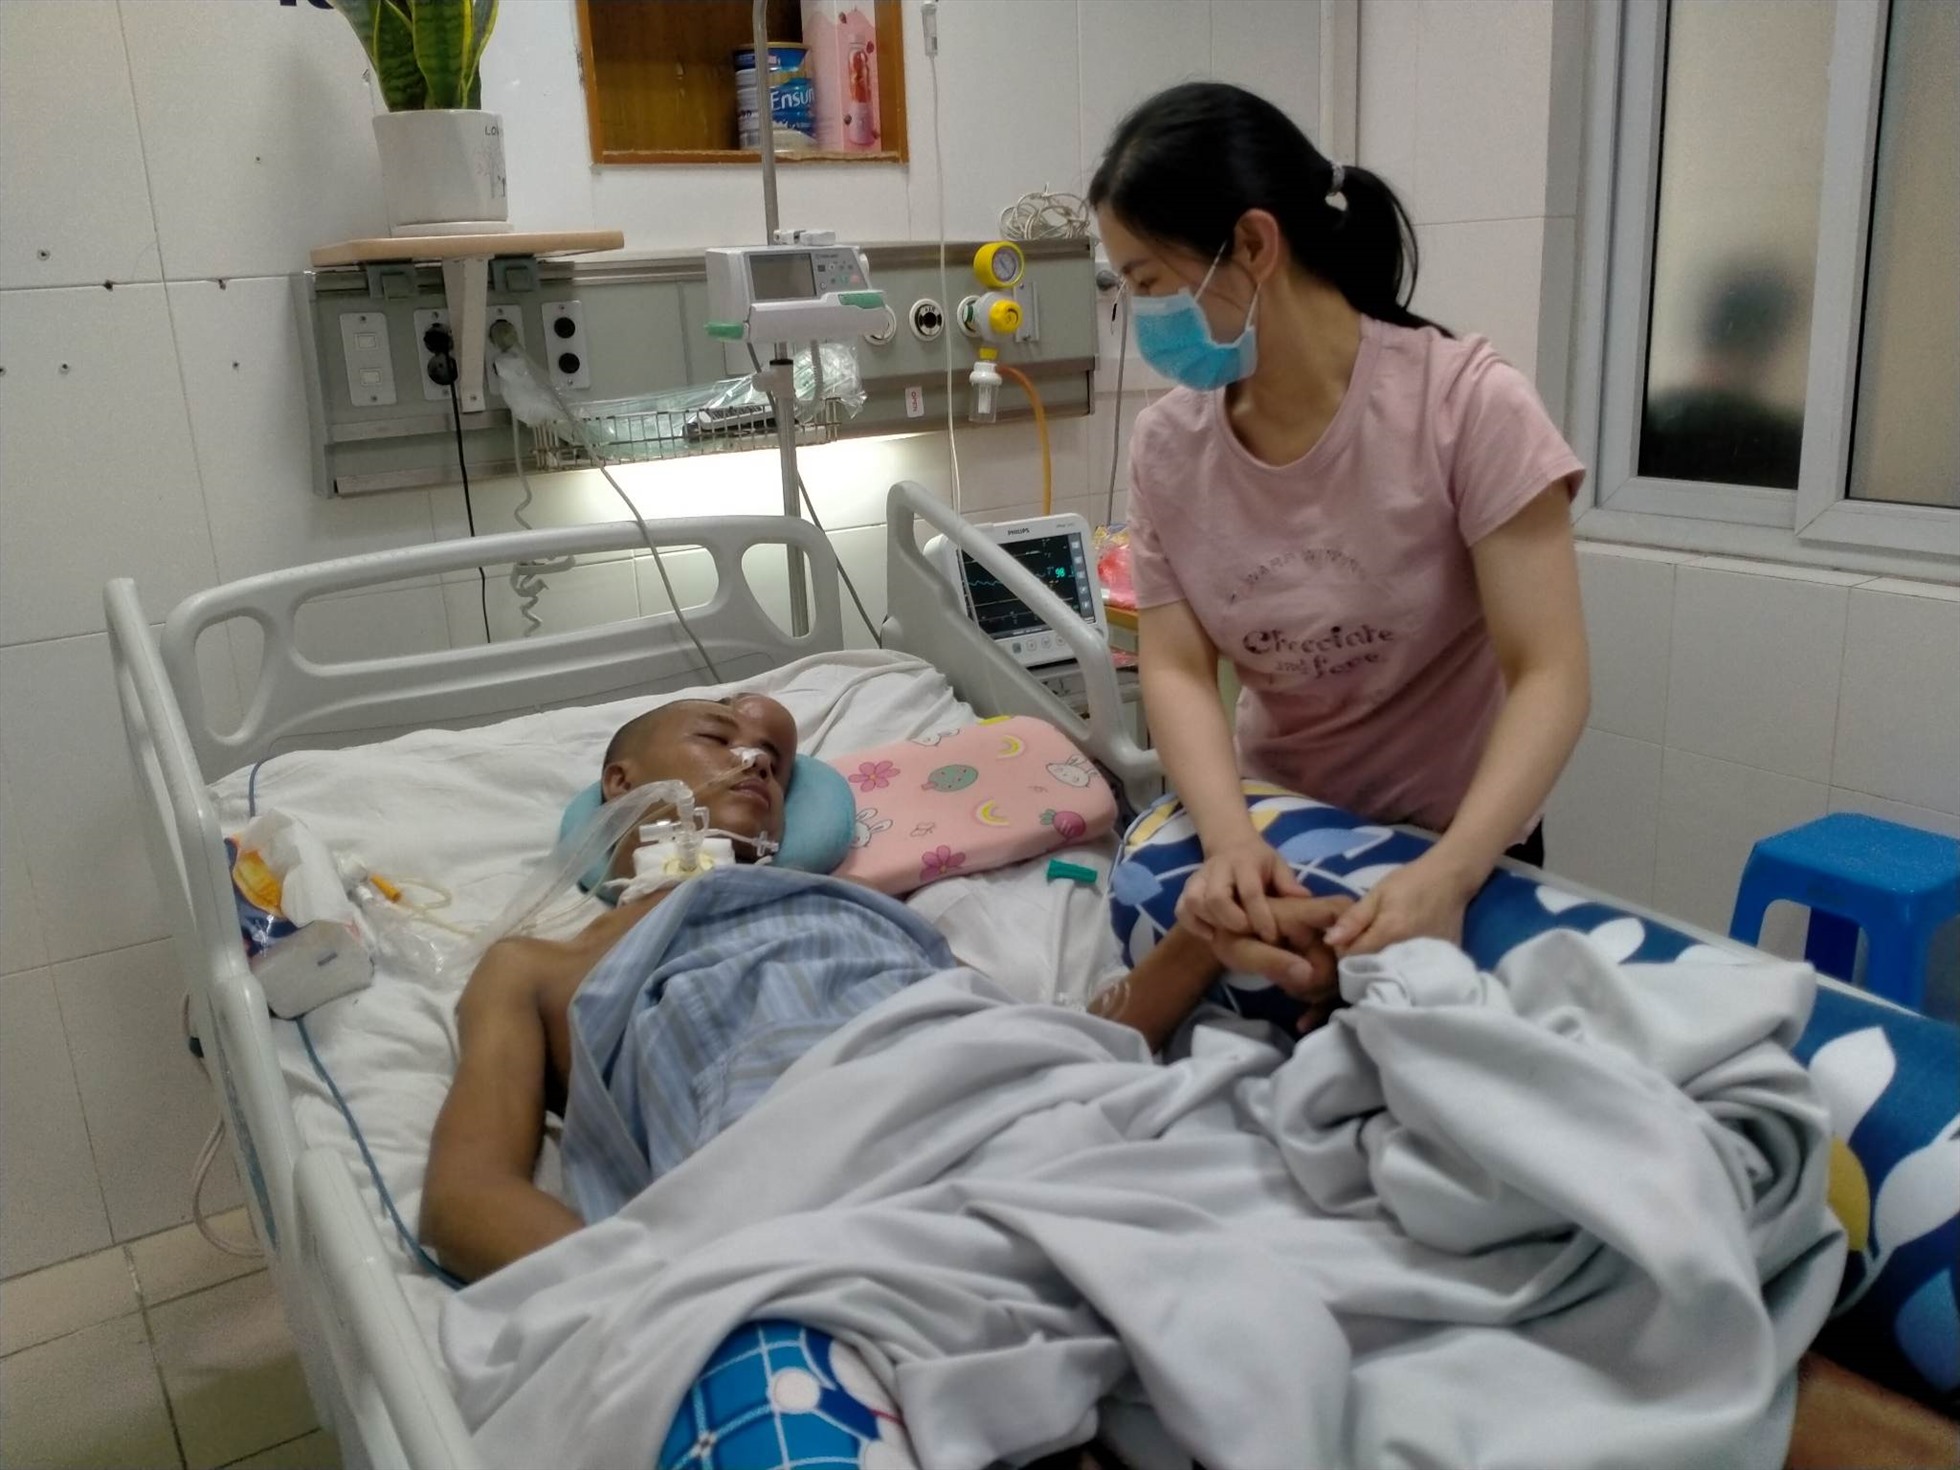 Chị Thanh nhìn chồng đau đớn nằm trên giường bệnh. Ảnh: Khánh Linh.